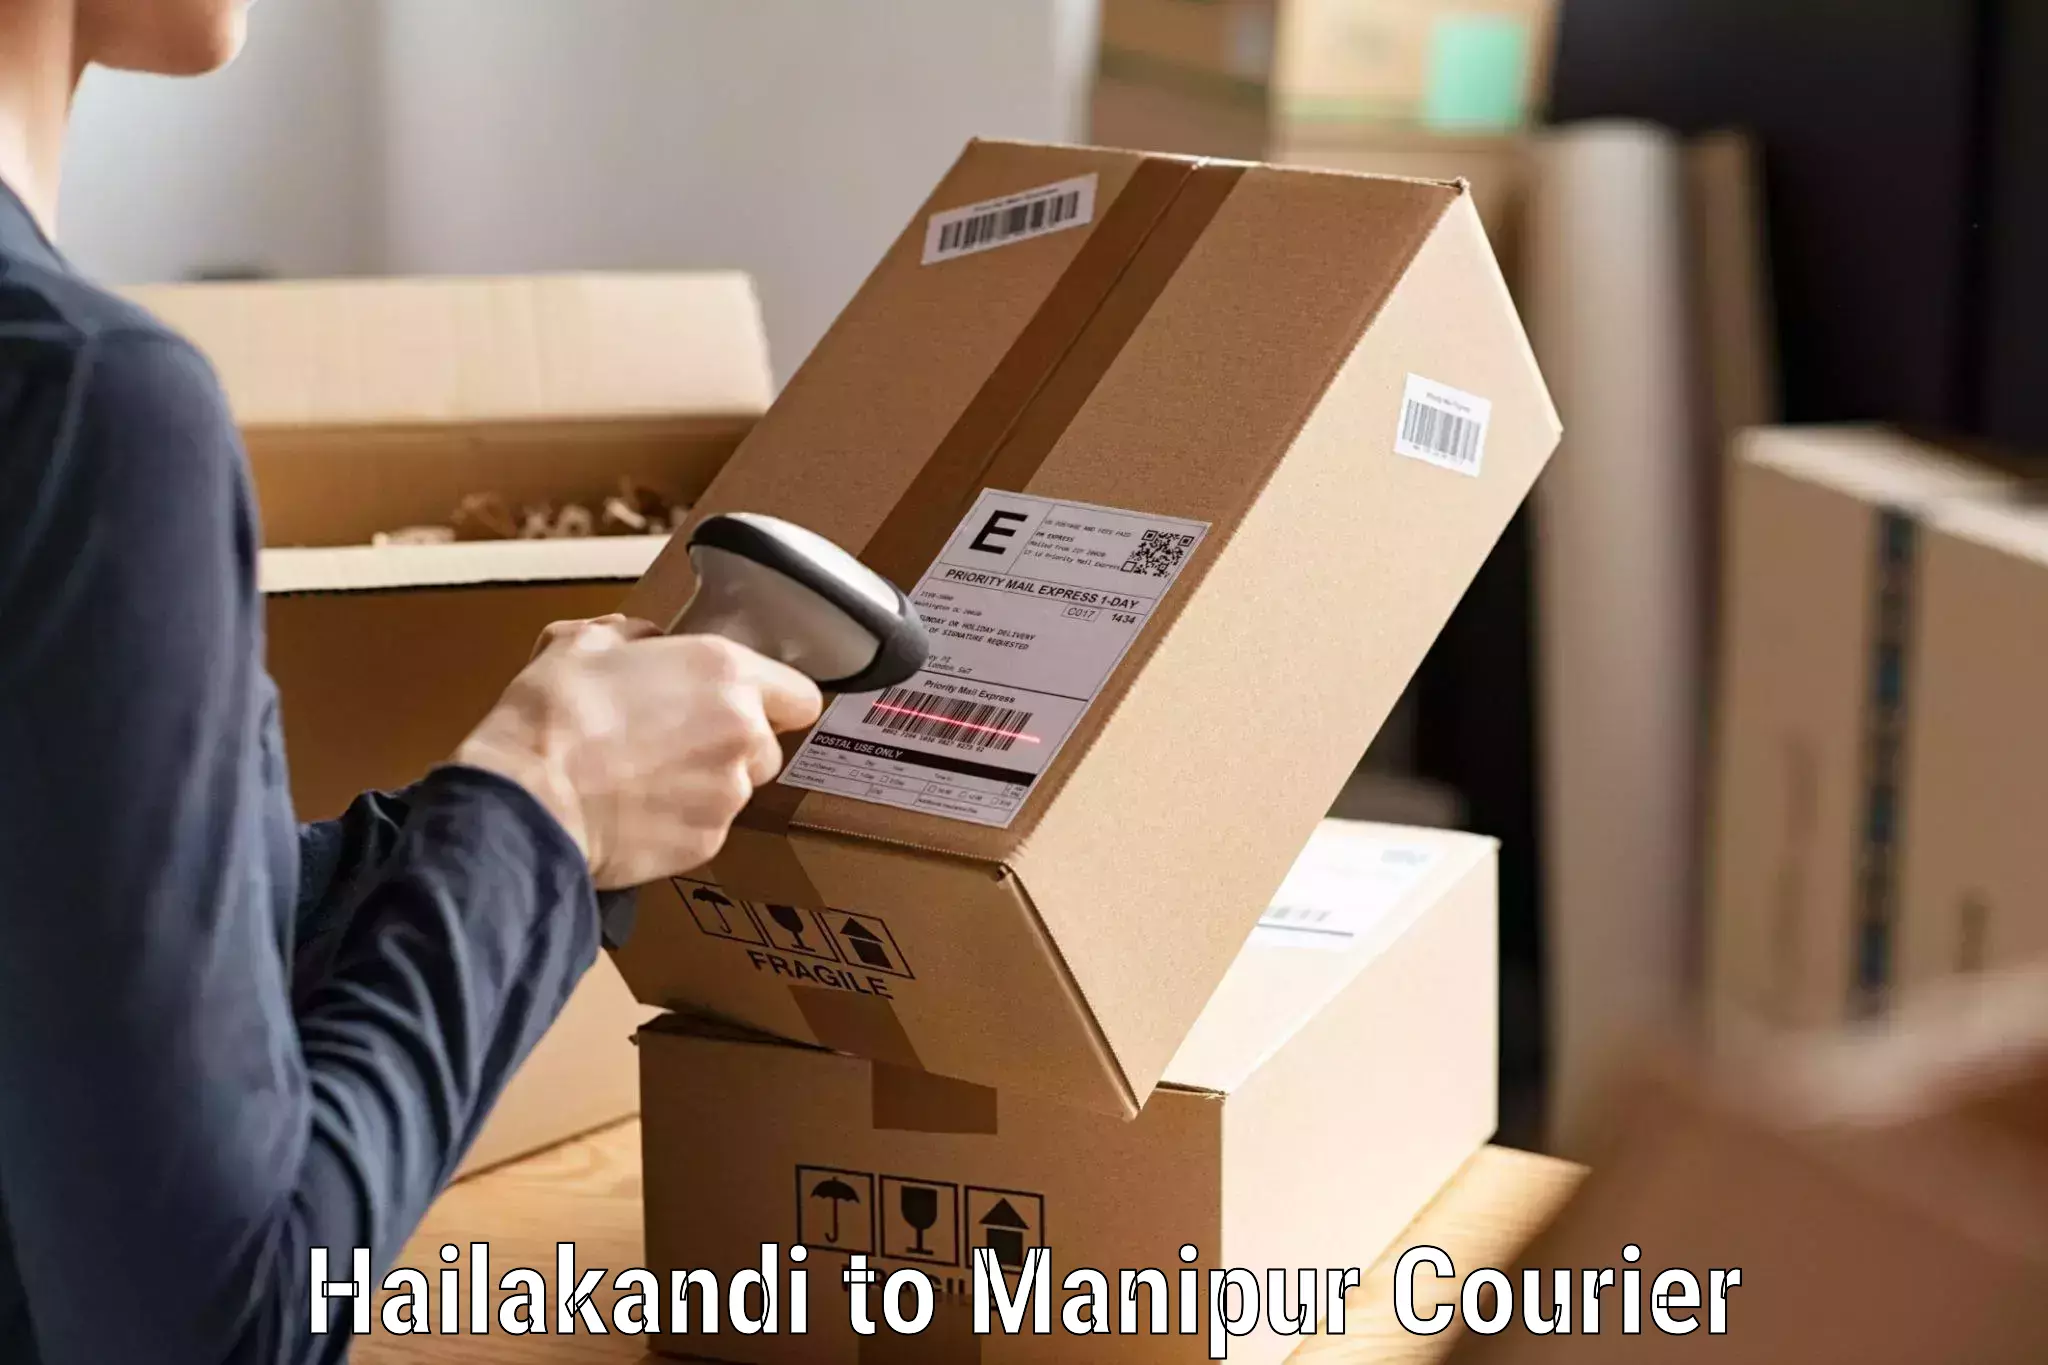 Express courier capabilities Hailakandi to Churachandpur